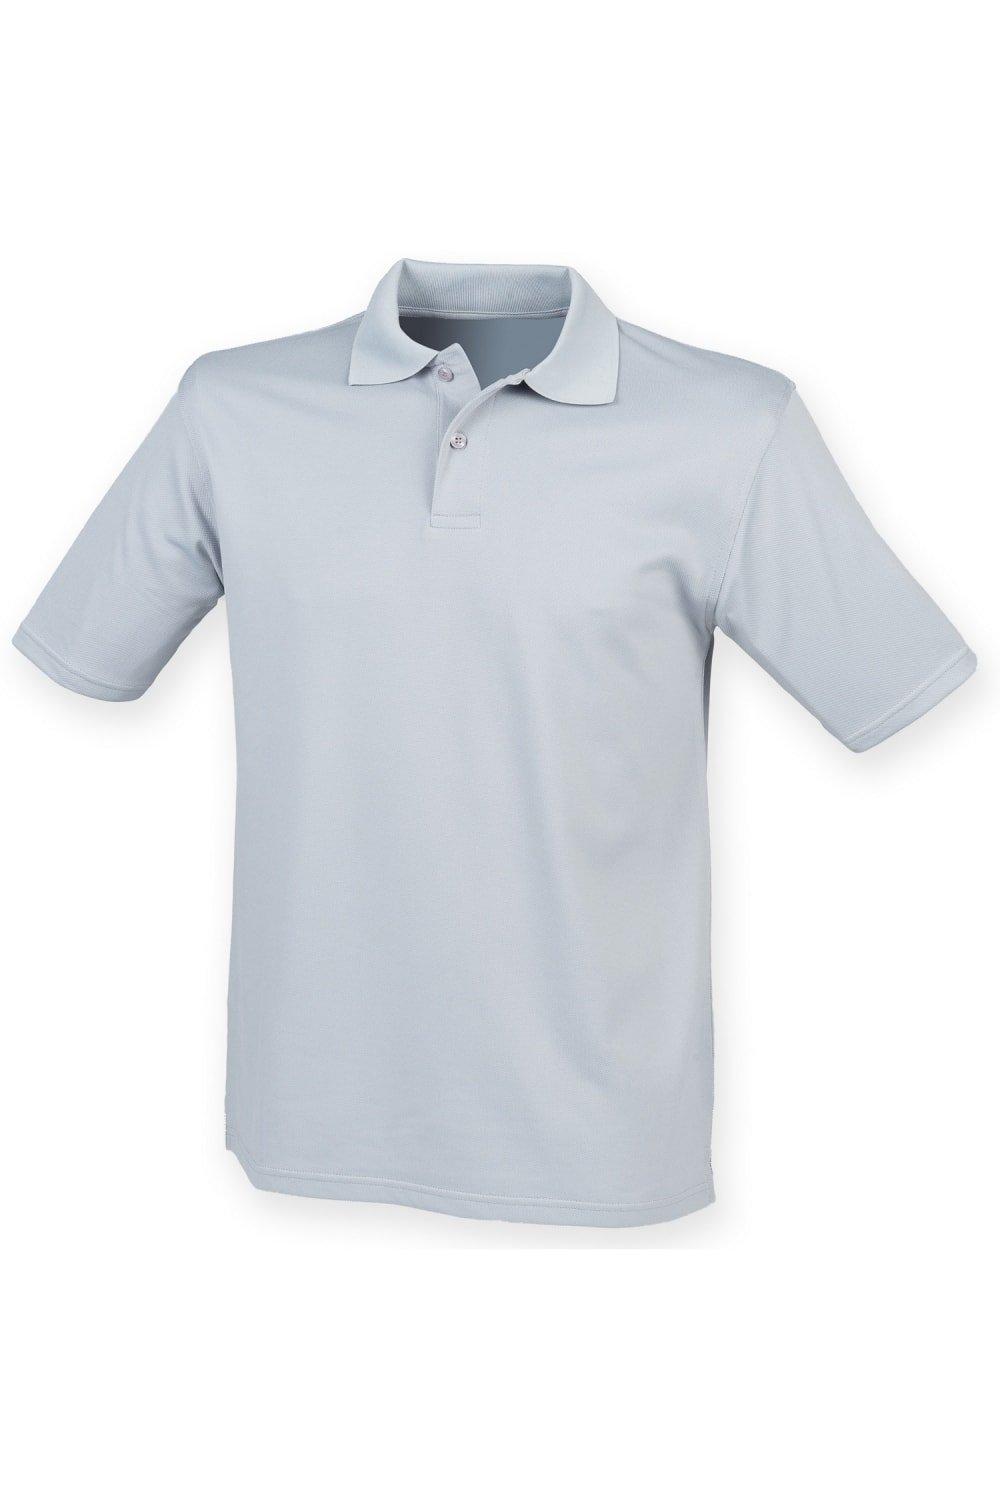 Рубашка поло Coolplus из пике Henbury, серебро рубашка поло coolplus из пике henbury черный